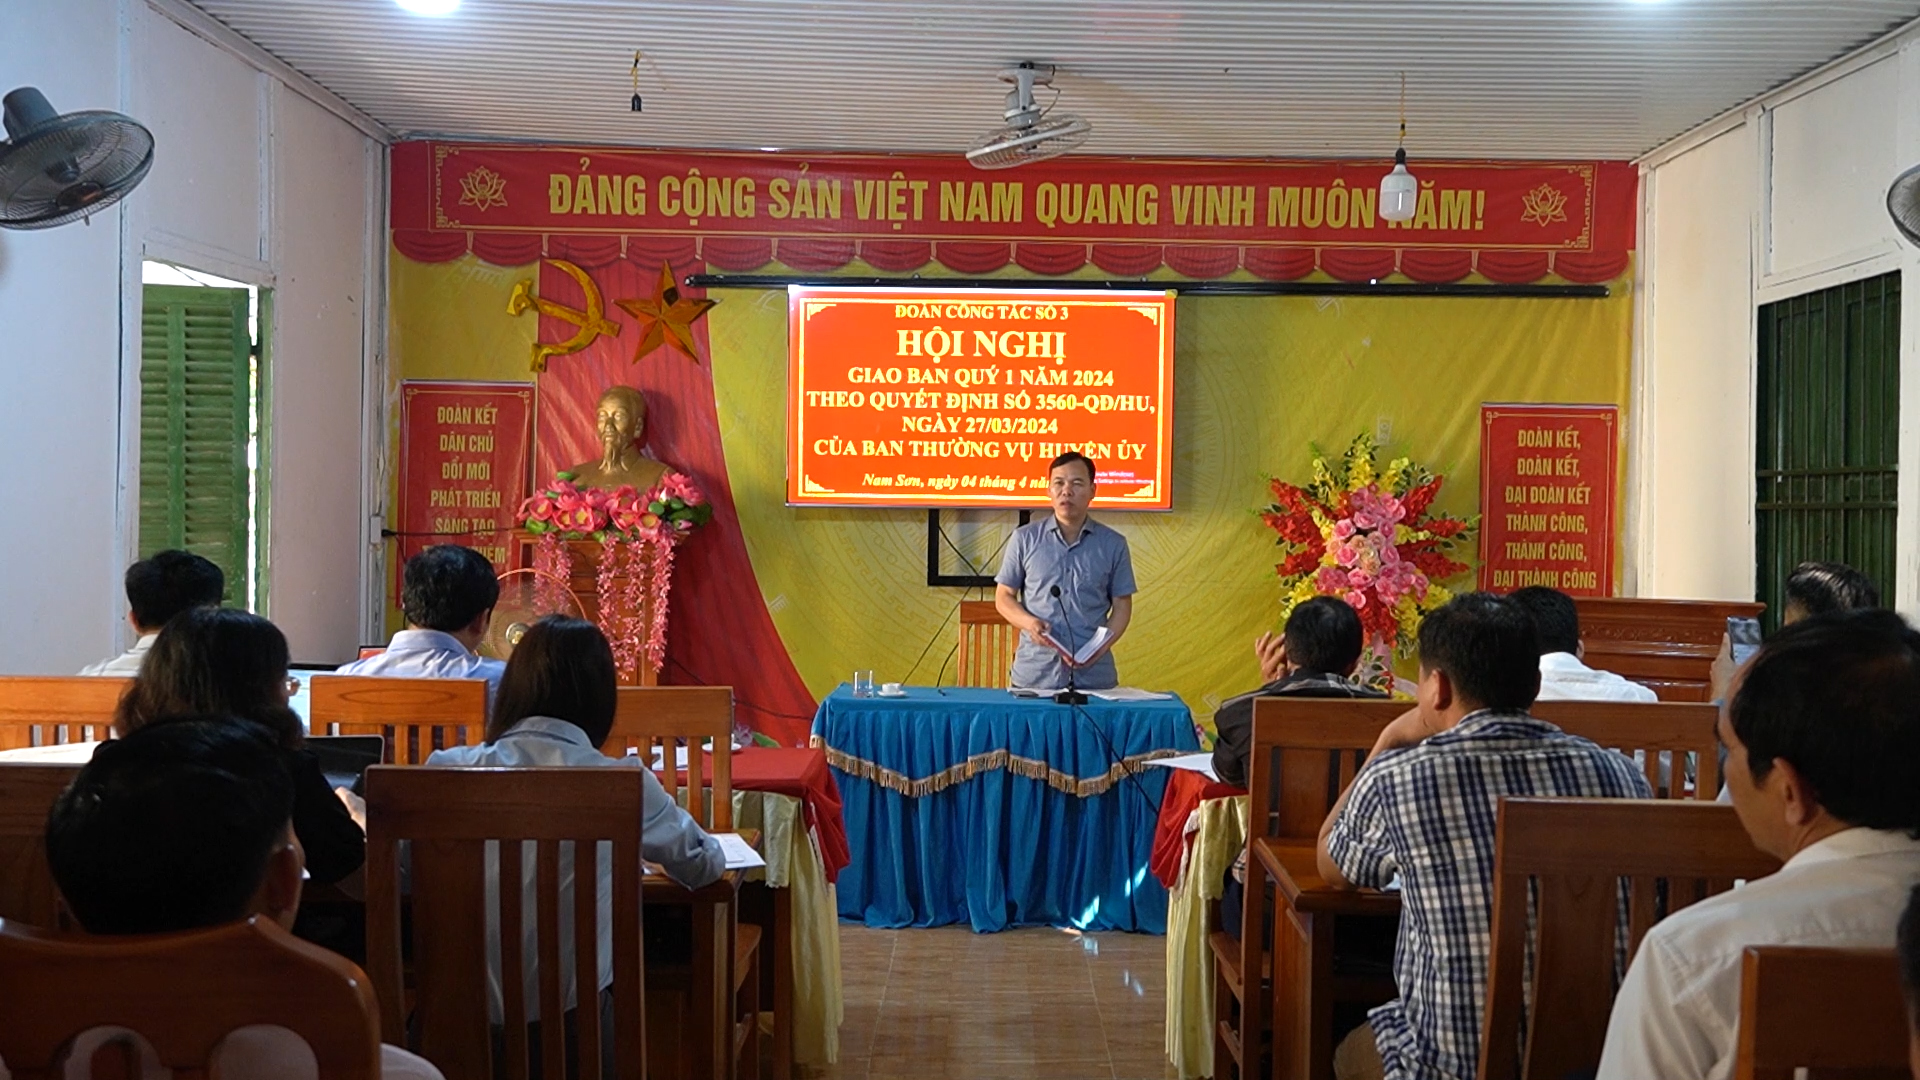 Chủ tịch UBND huyện dự hội nghị giao ban 8 xã phía Nam huyện Hoàng Su Phì